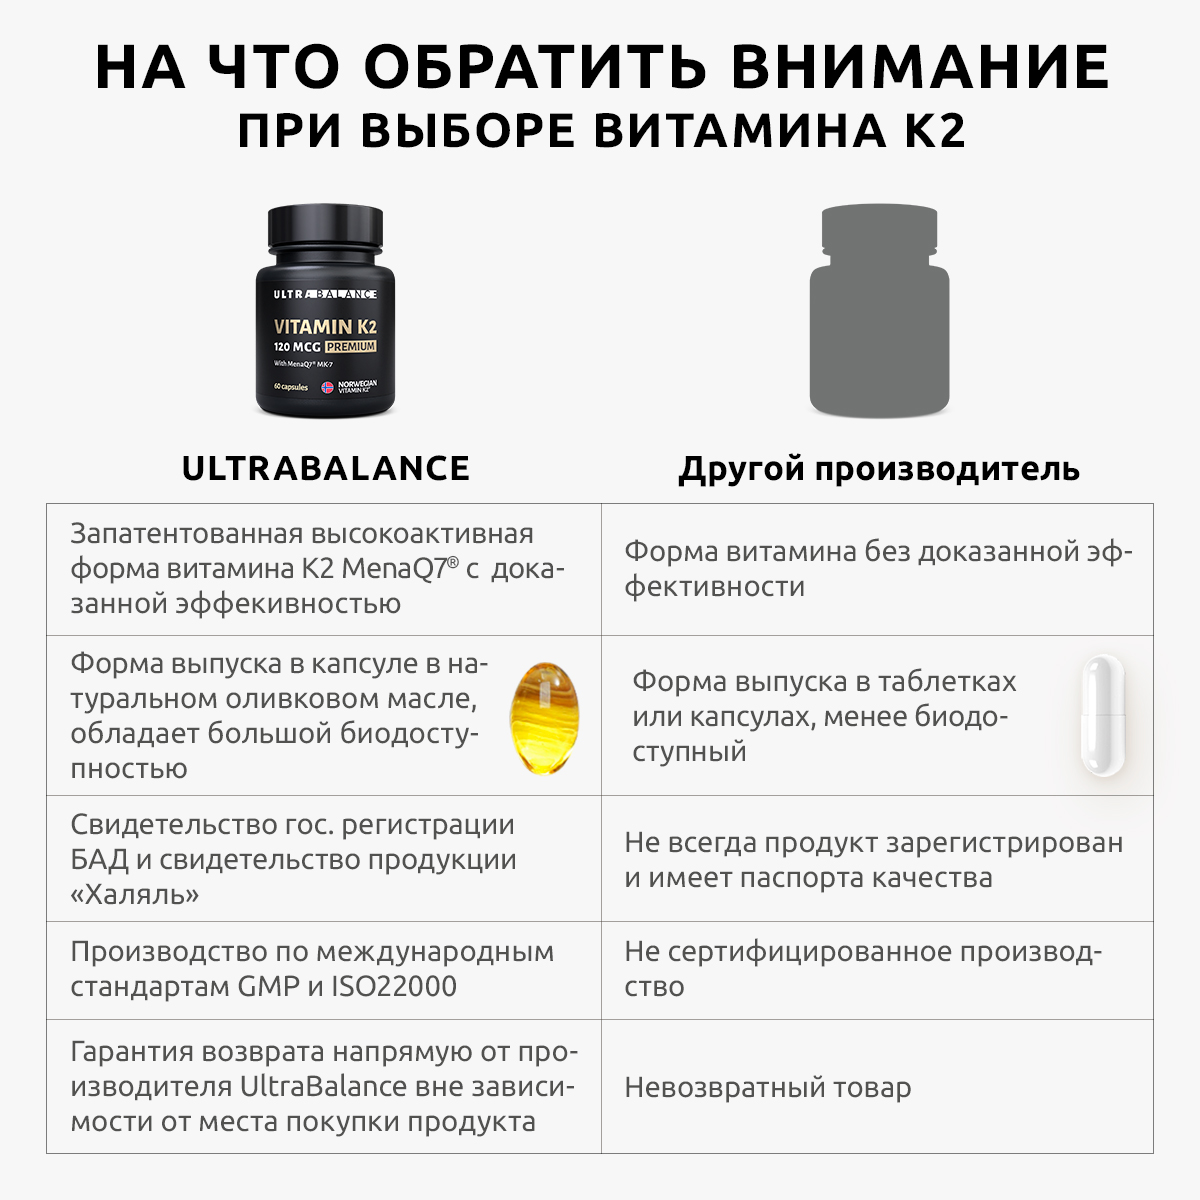 Витамин моно К2 МК-7 комплекс UltraBalance бад менахинон7 120 mcg Premium 60 капсул - фото 2